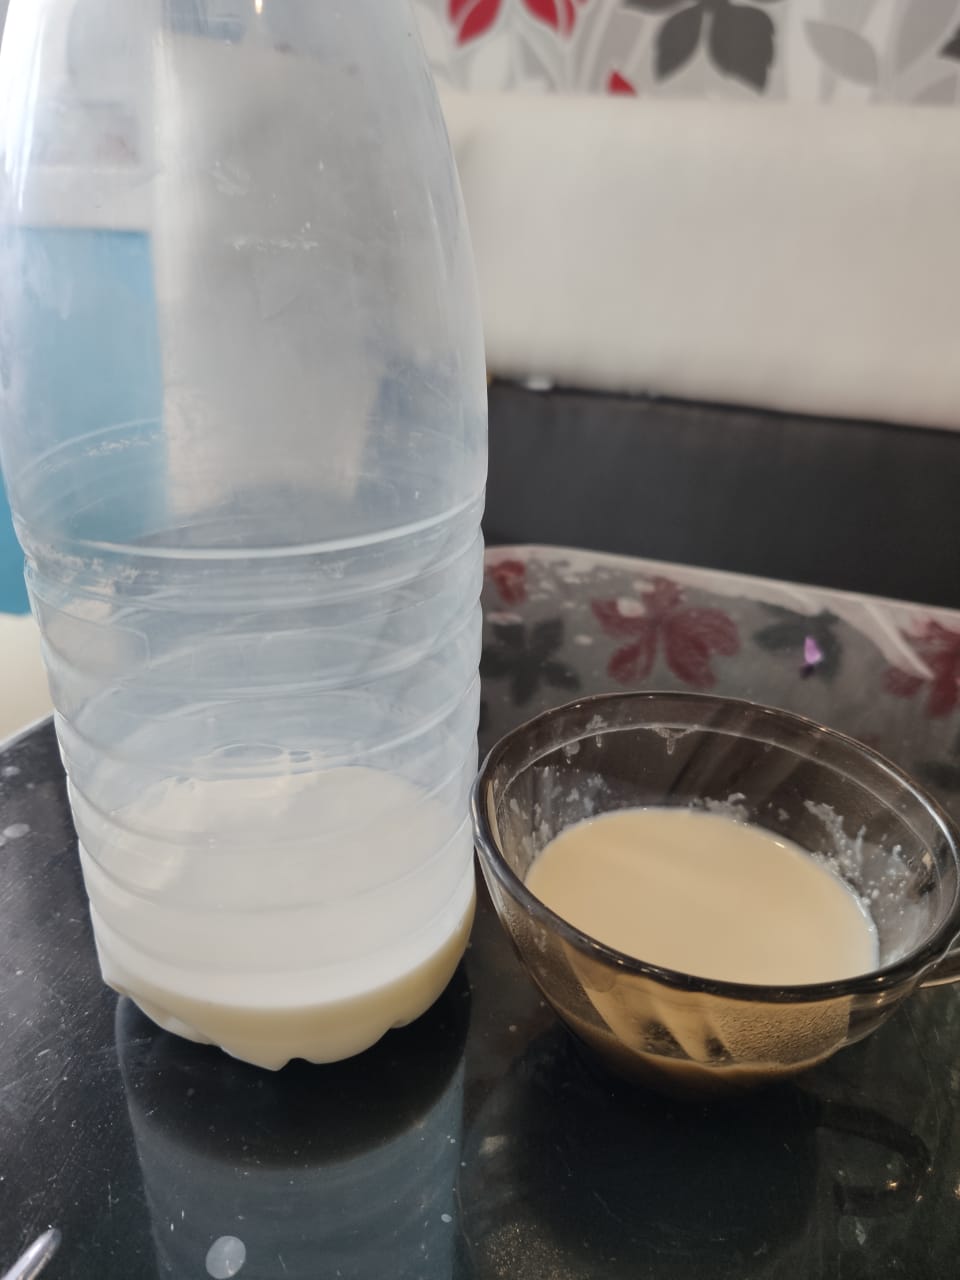 В Армавире зафиксированы факты продажи опасной молочной продукции 